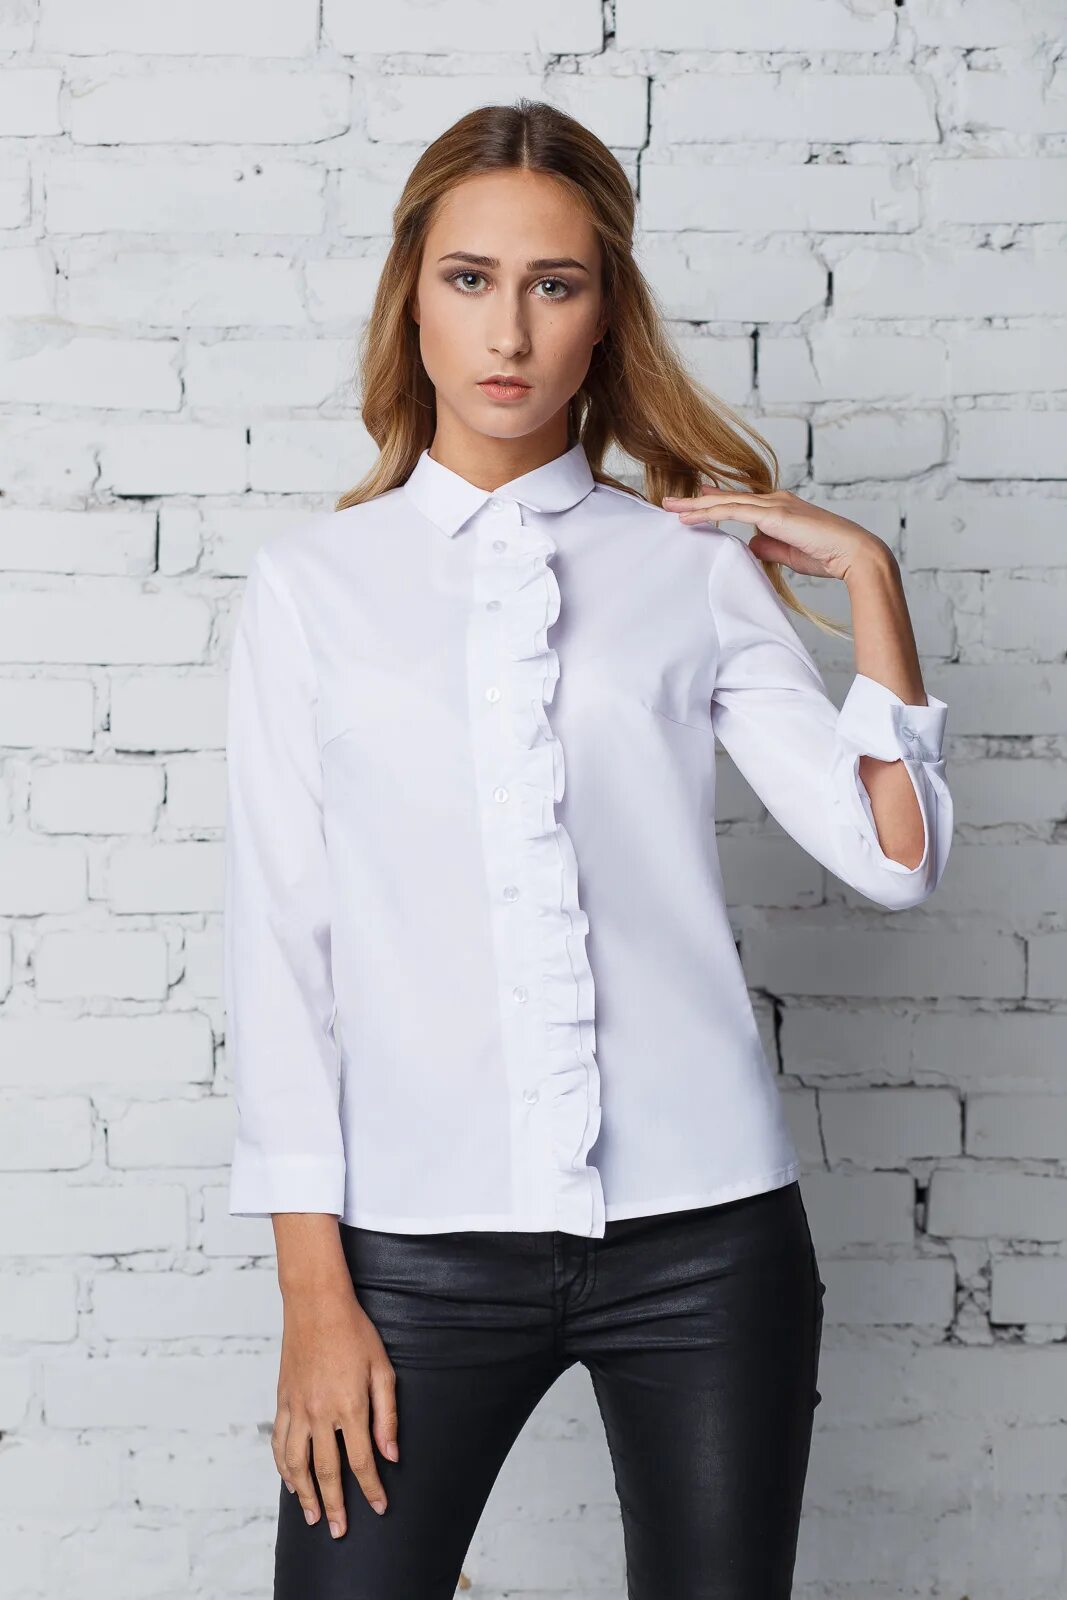 Белая блузка на валберис. Белая блузка. Белая рубашка женская. Белая блузка женская. Интересные рубашки женские.